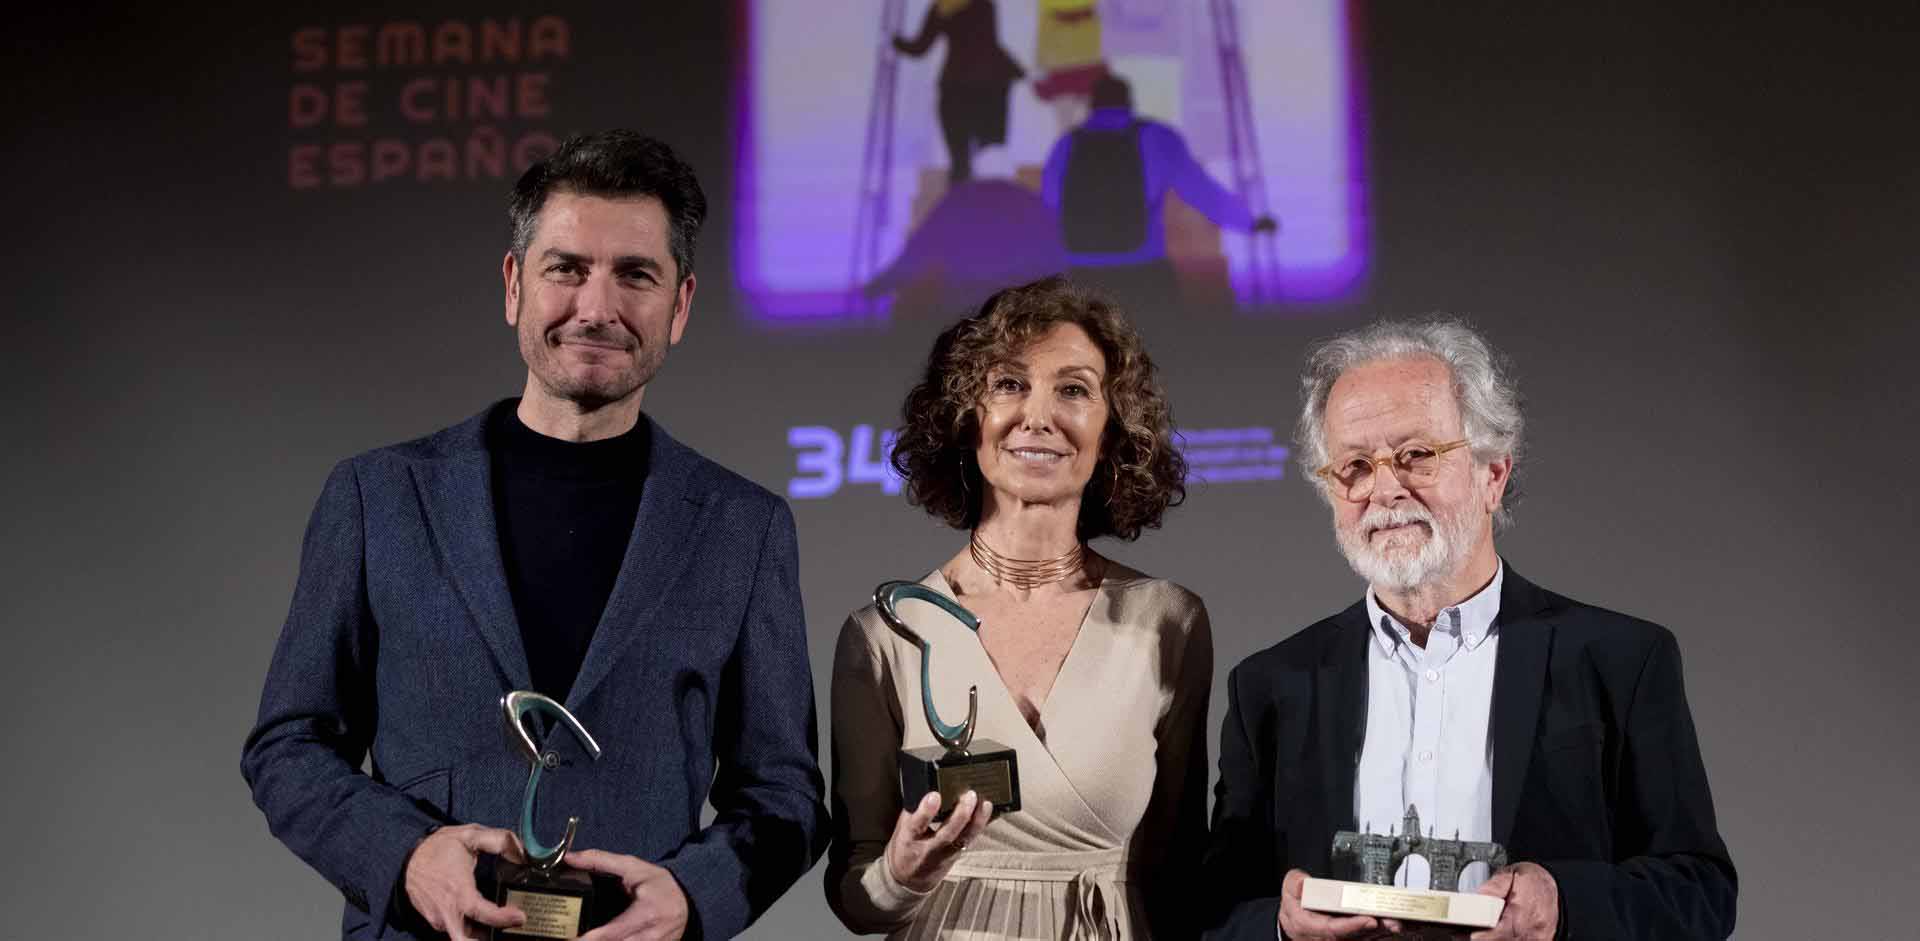 La Semana de Cine Español de Carabanchel arranca con homenajes